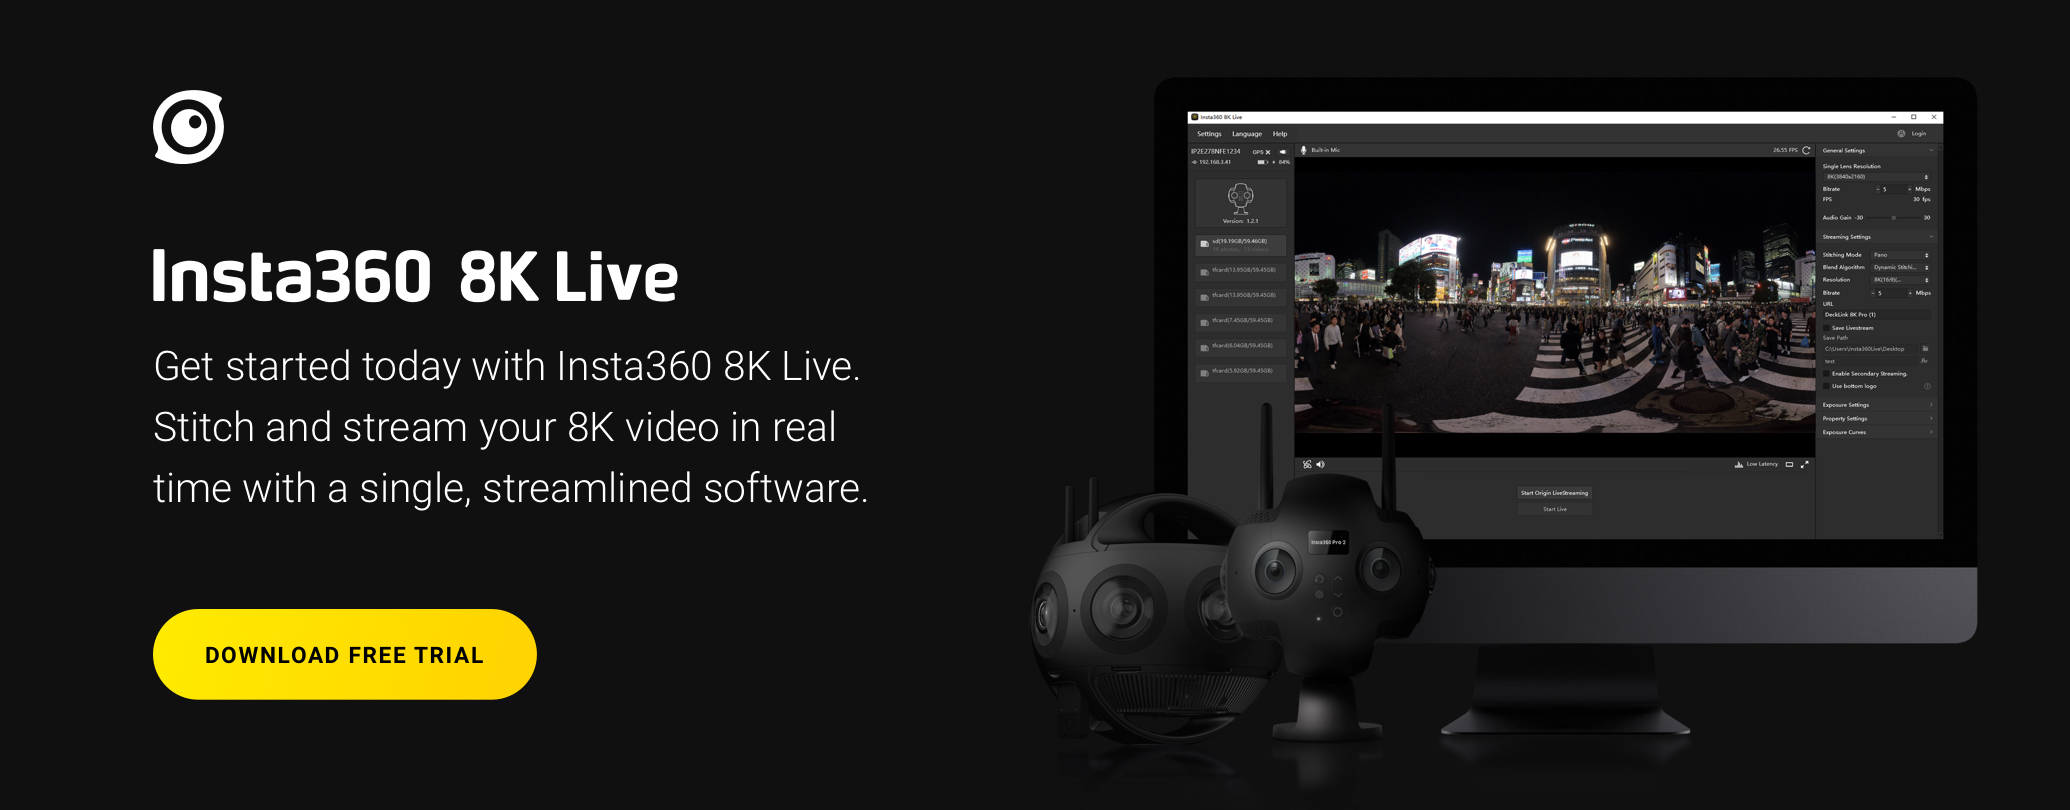 Insta360 8K live VR live streaming software